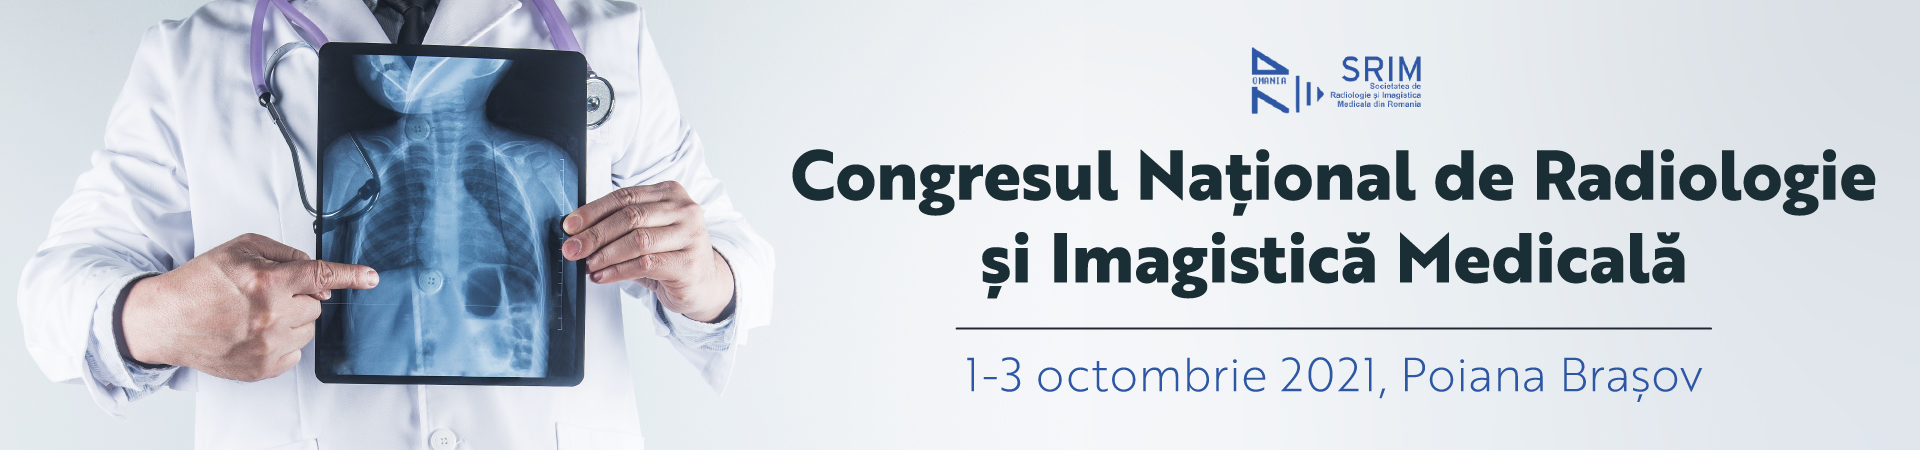 Congresul Național de Radiologie și Imagistică Medicală